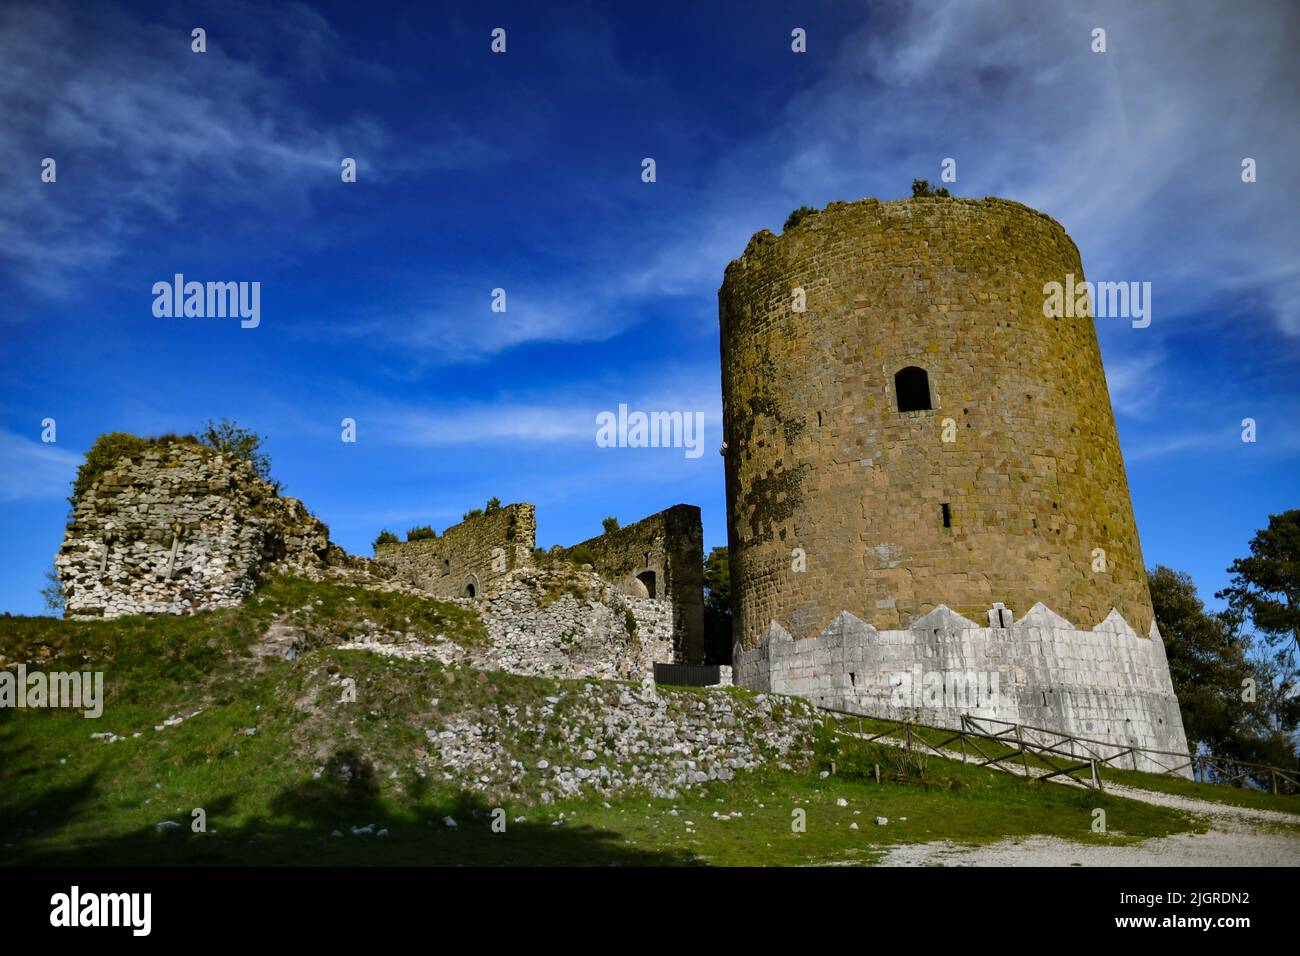 Les ruines d'un château médiéval dans la vieille ville de Caserta, en Italie Banque D'Images